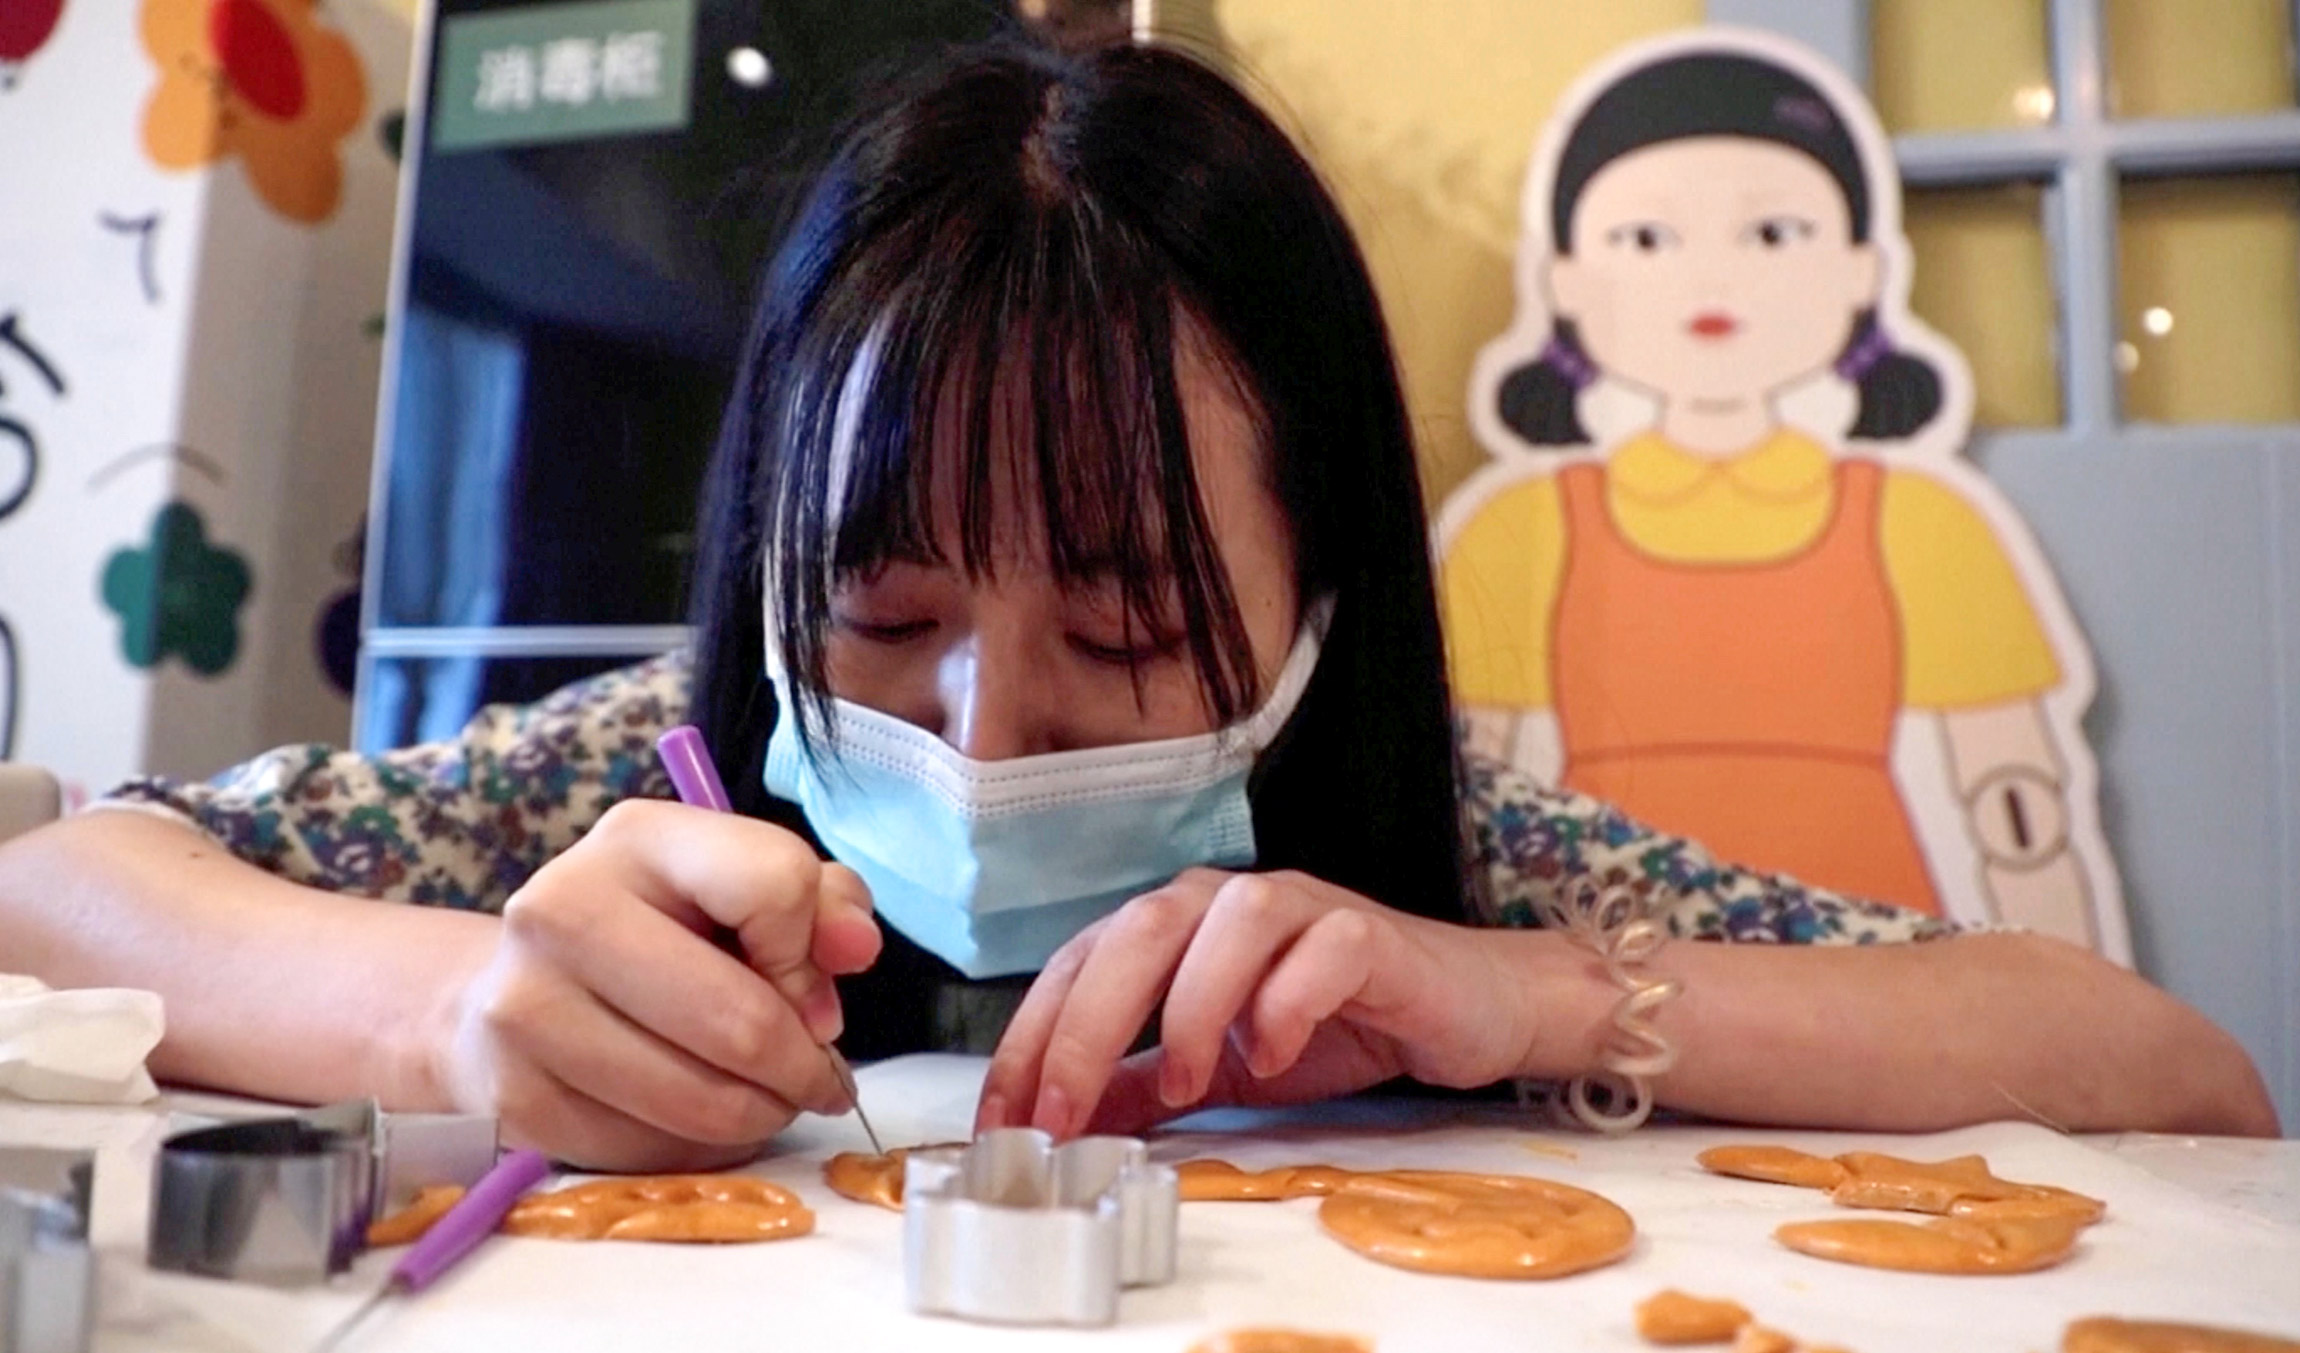 16 октября, Пекин (Китай). Посетители пекарни вырезают формы из печенья на мероприятии, посвященном сериалу